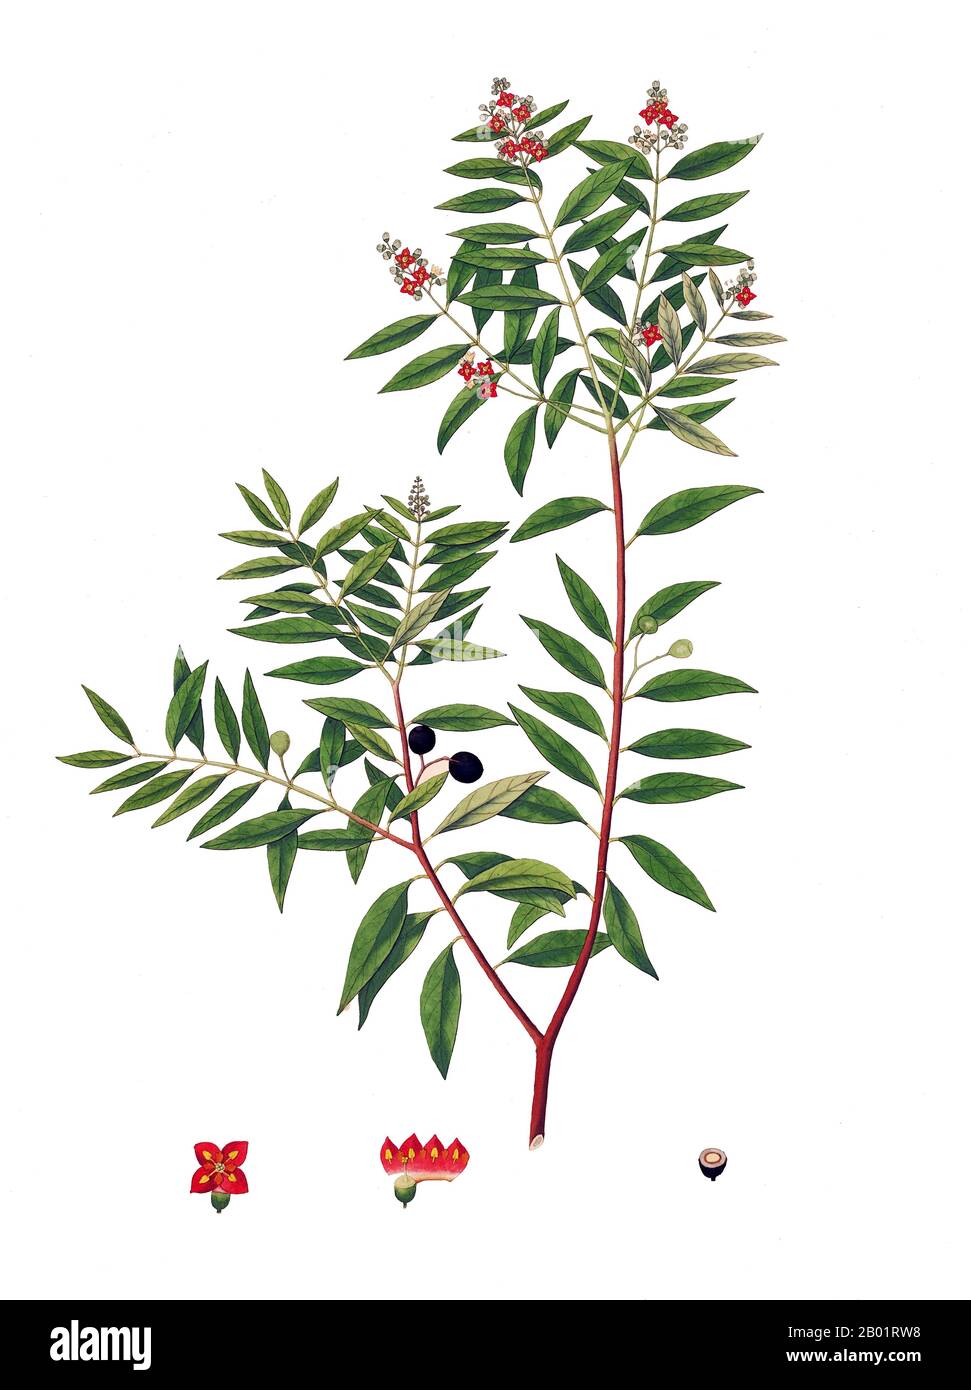 Inde/Écosse : Indian Sandalwood (Santalum Album). Illustration de William Roxburgh (29 juin 1751 - 18 février 1815) tirée des « plantes de la côte de Coromandel », 1795. Les bois de santal sont des arbres hémiparasites de taille moyenne. Les membres notables de ce groupe sont le santal indien (album Santalum) et le santal australien (Santalum spicatum). D'autres espèces du genre ont du bois parfumé. On les trouve en Inde, au Bangladesh, au Sri Lanka, en Australie, en Indonésie et dans les îles du Pacifique. En Inde, au Bangladesh et au Sri Lanka, il est appelé Chandan. Les bois sont lourds, jaunes et à grain fin. Banque D'Images